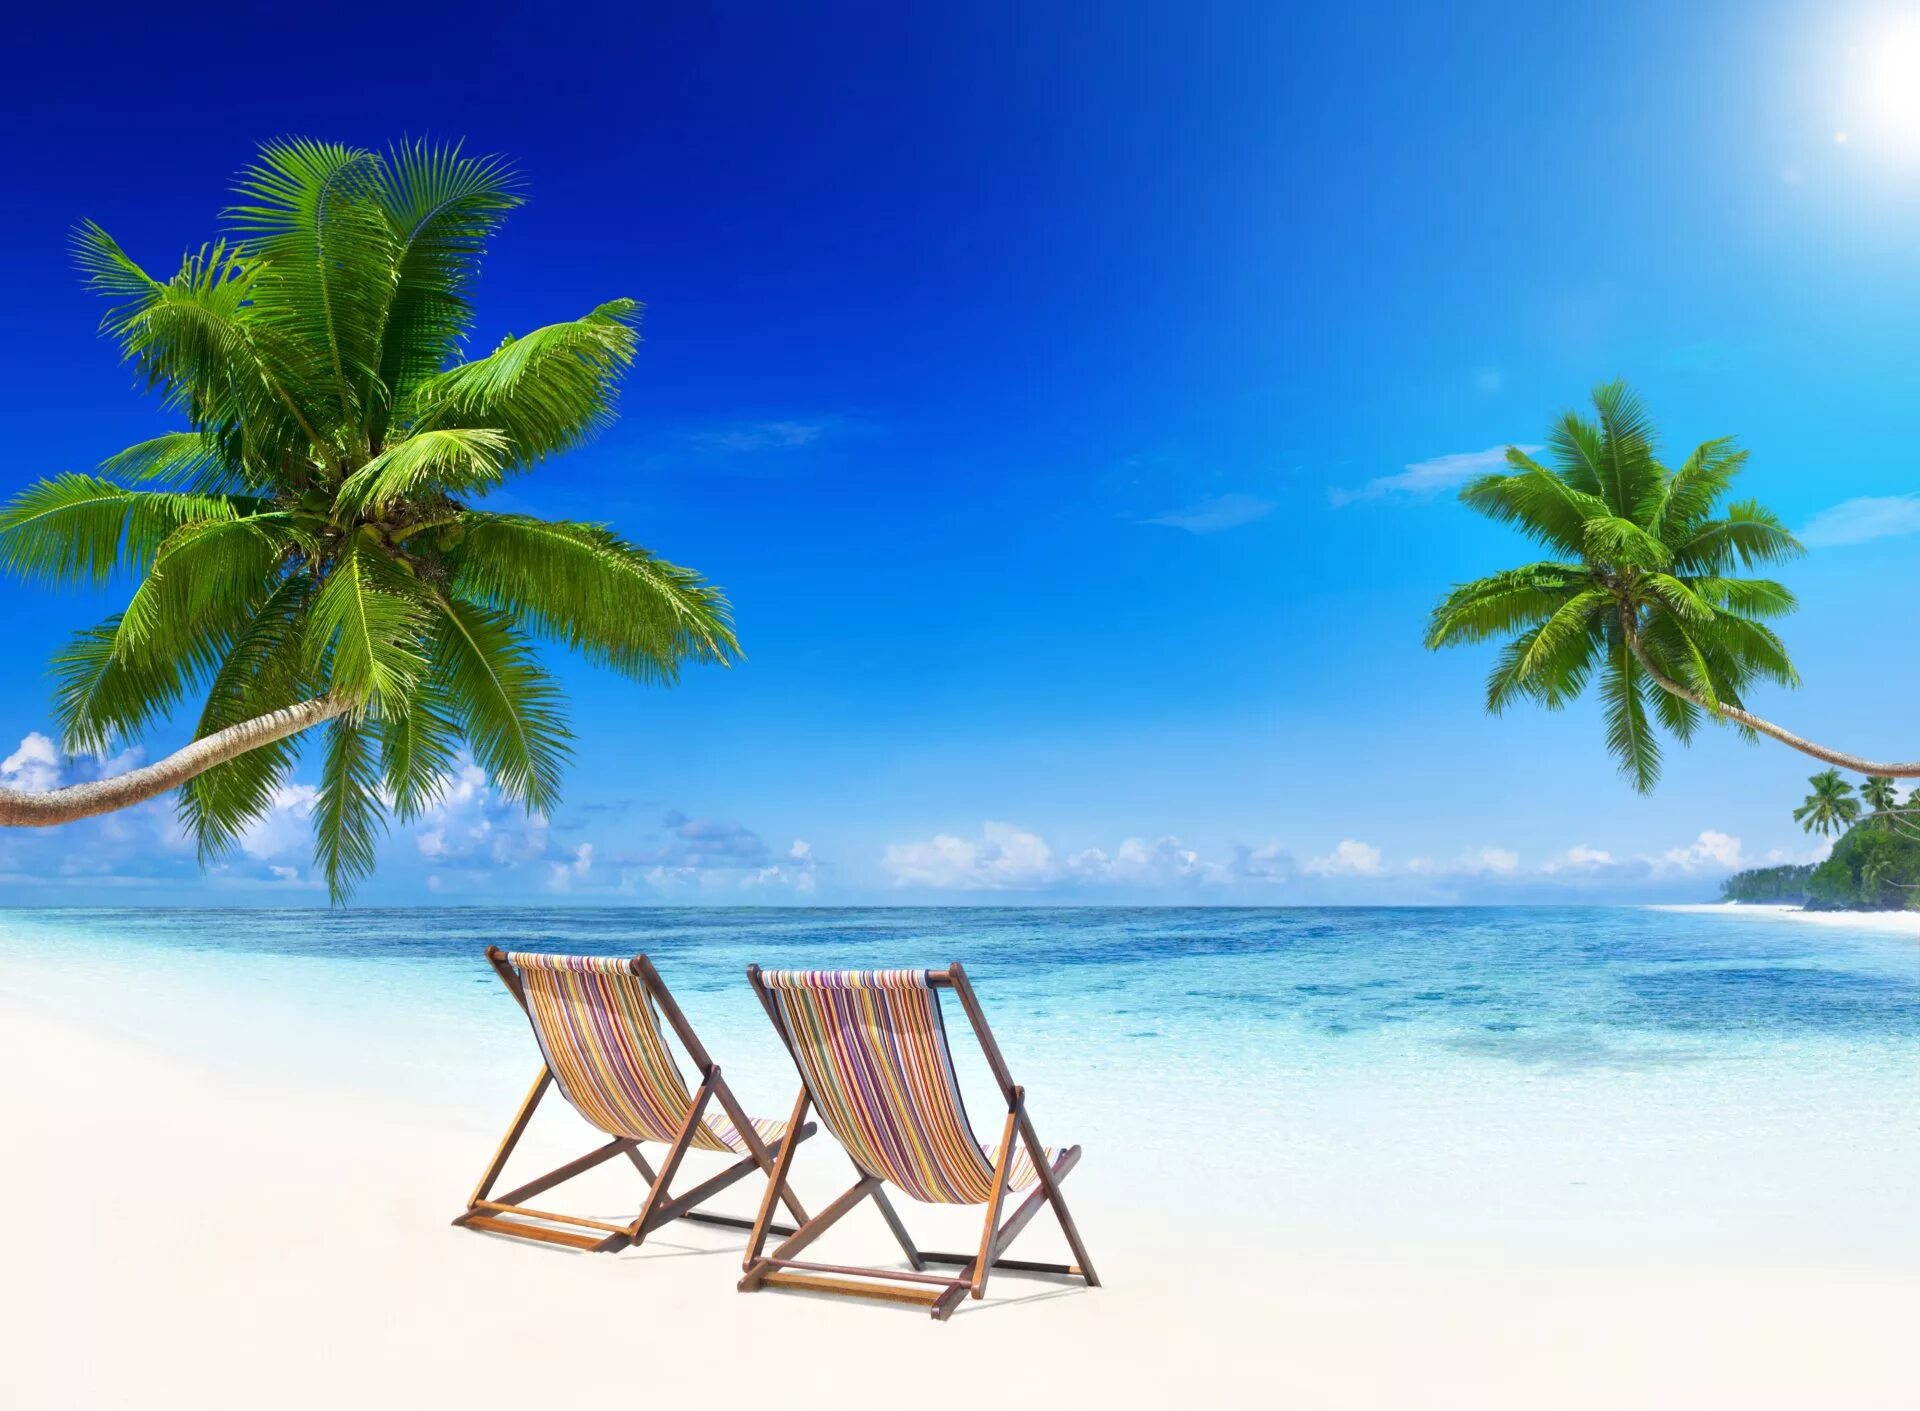 Отпуск 2 отзывы. Море пляж пальмы. Райский пляж. Красивый пляж с пальмами. Море солнце пальмы.